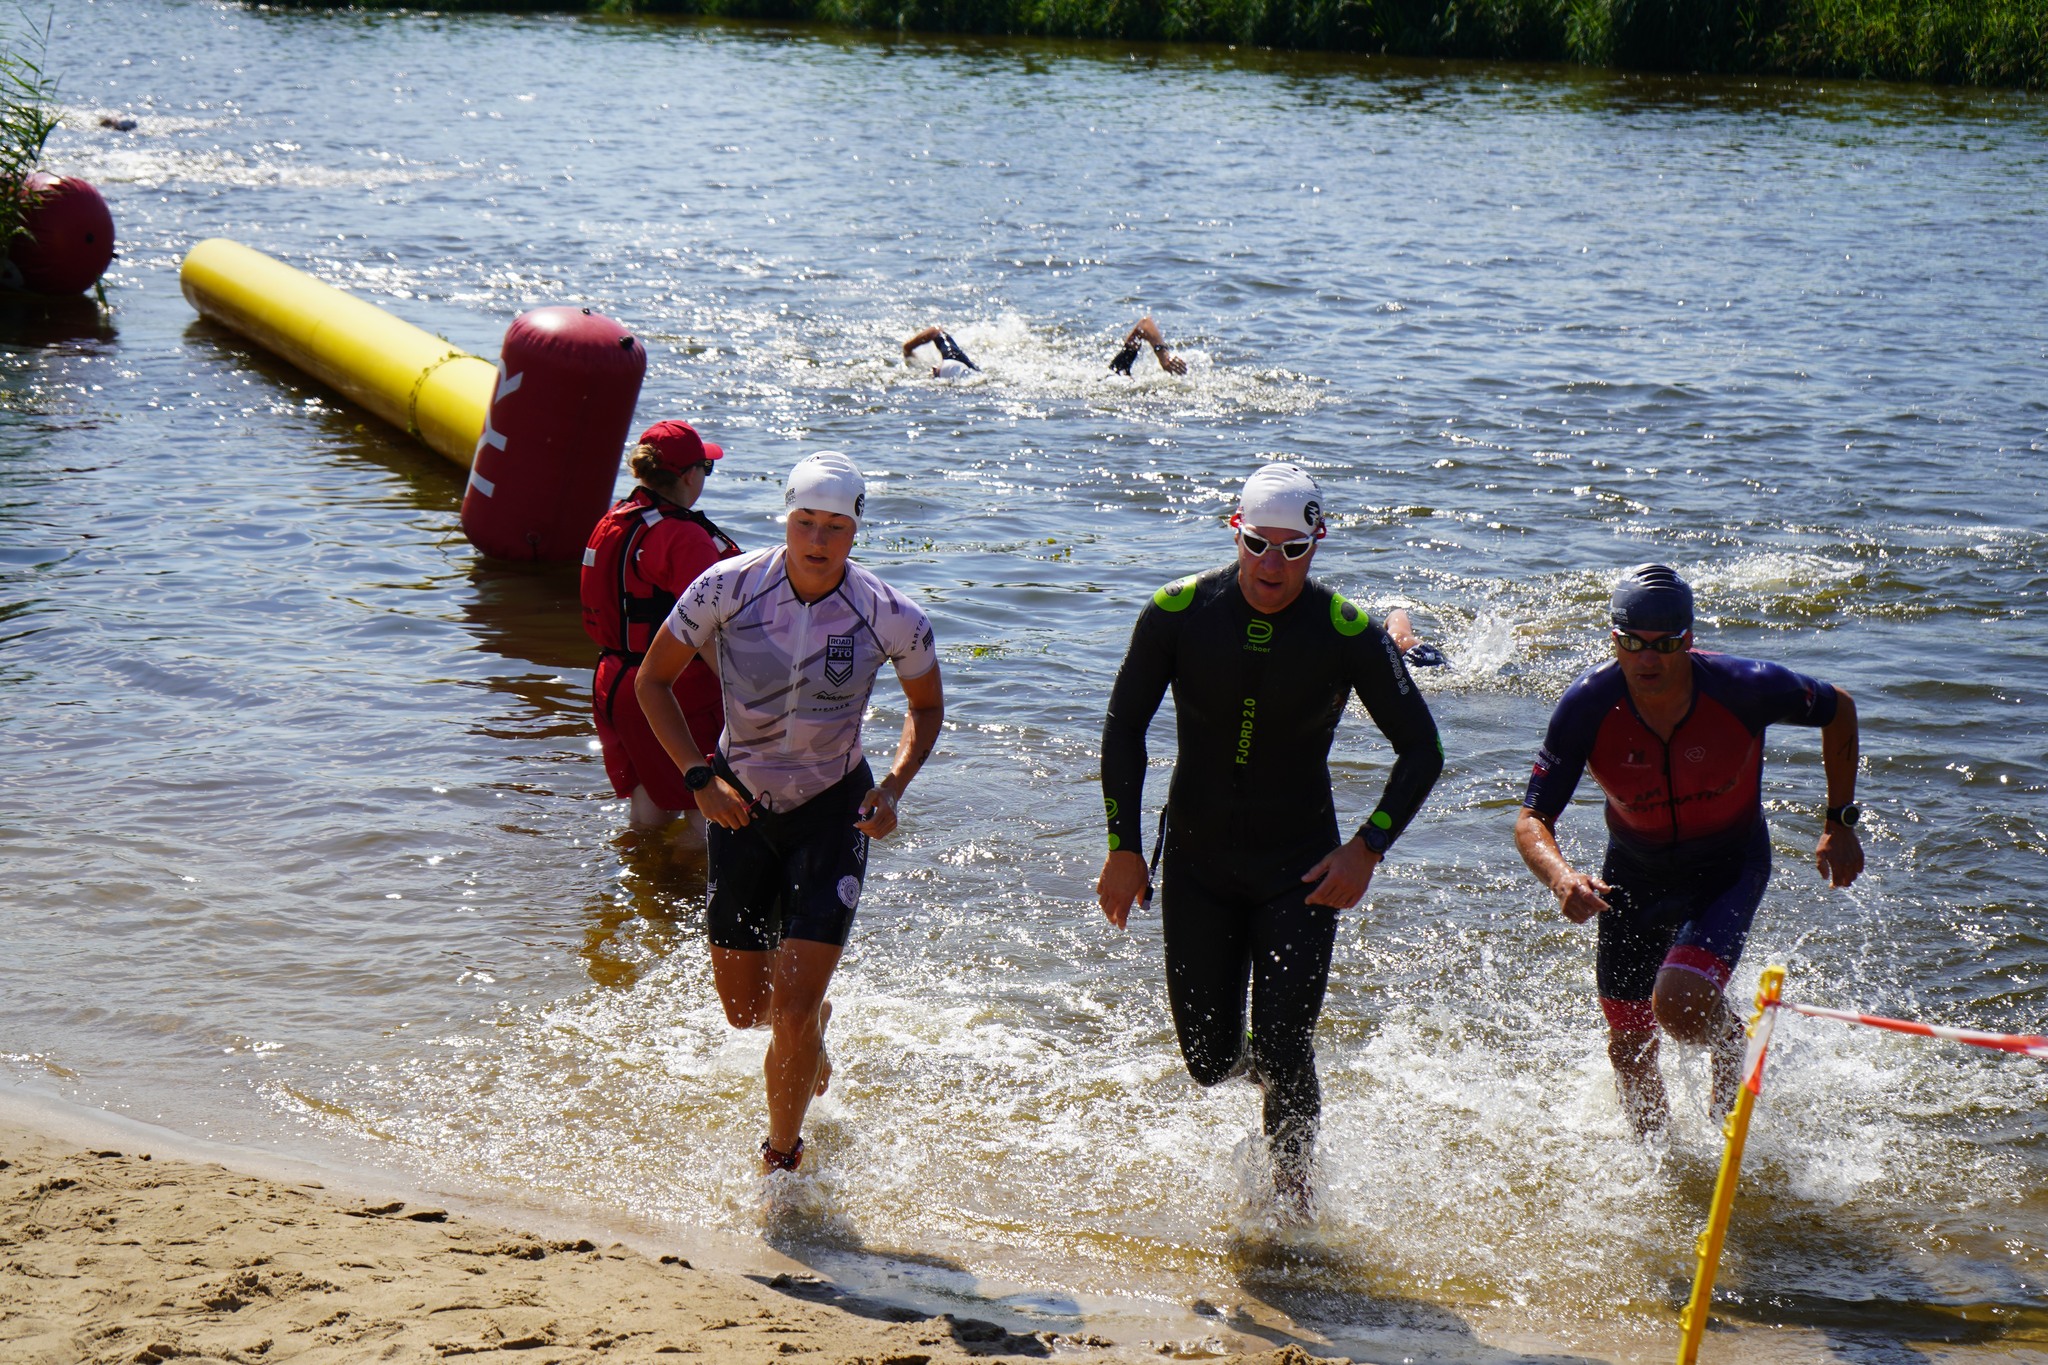 Na zdjęciu widać uczestników triathlonu wychodzących z wody na brzeg. Trzech zawodników w strojach pływackich i czepkach śpieszy się w kierunku linii wyznaczonej przez taśmę. W tle widać inne osoby w wodzie, a także wolontariusza w czerwonej kamizelc